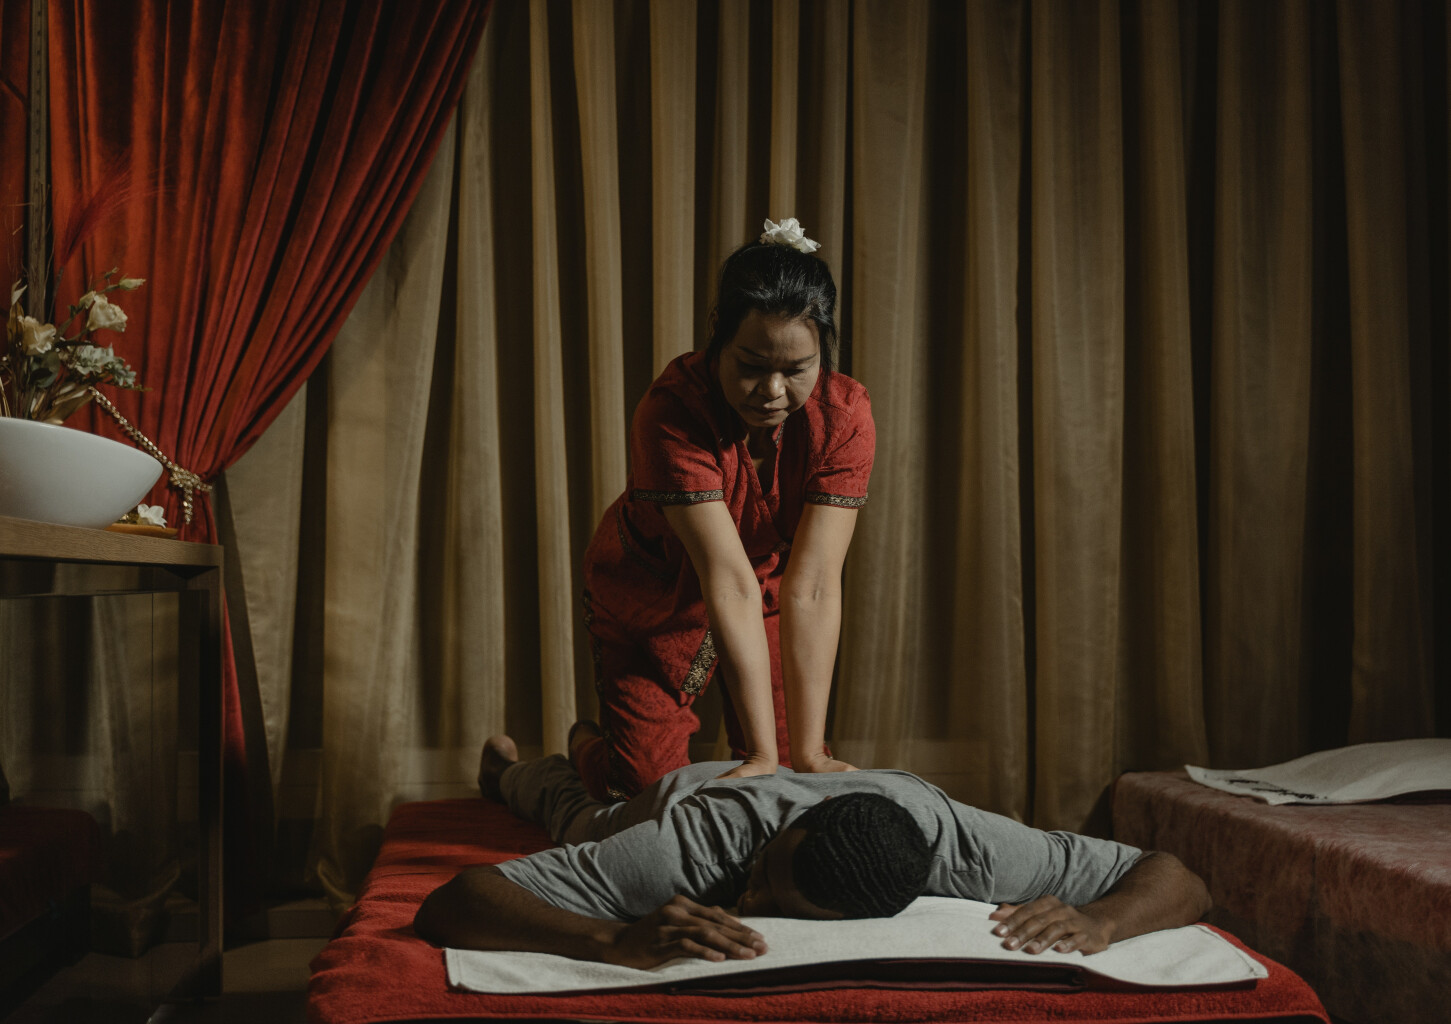 Tradicinis tajų masažas 60 min.